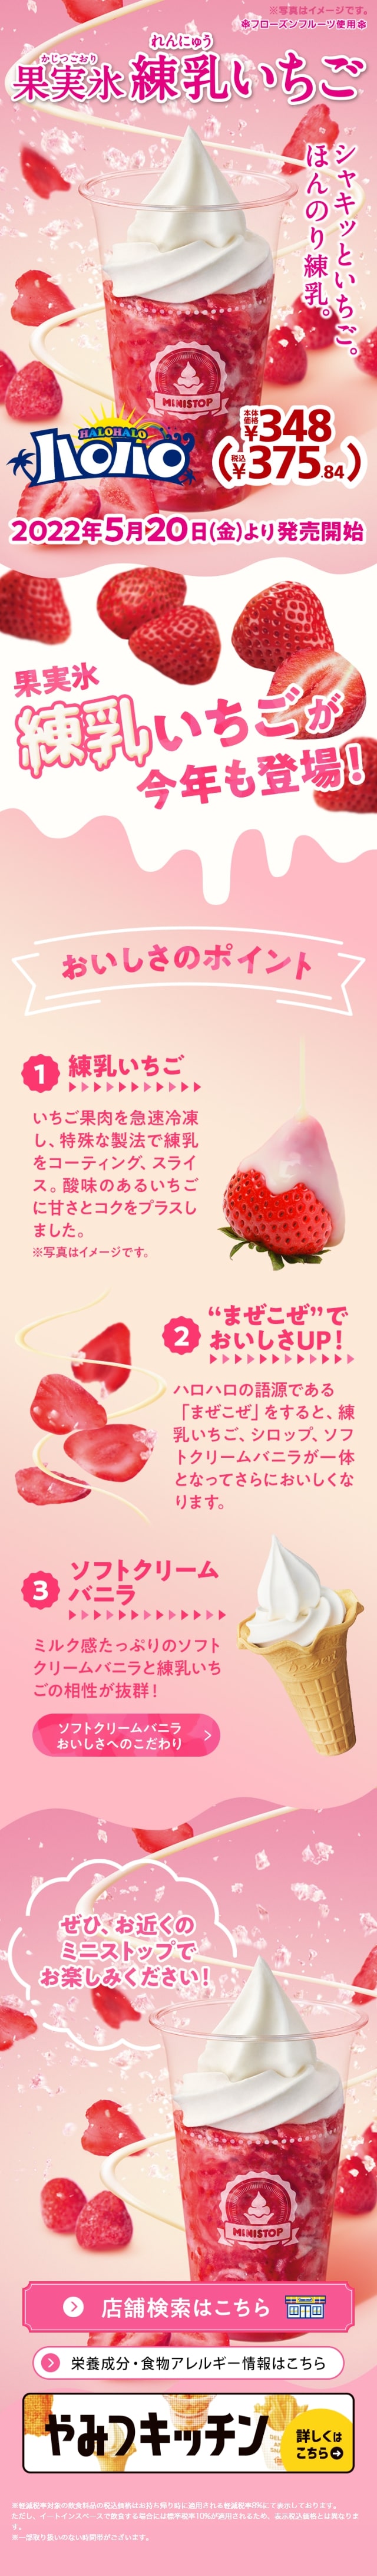 果実氷練乳いちご_sp_1